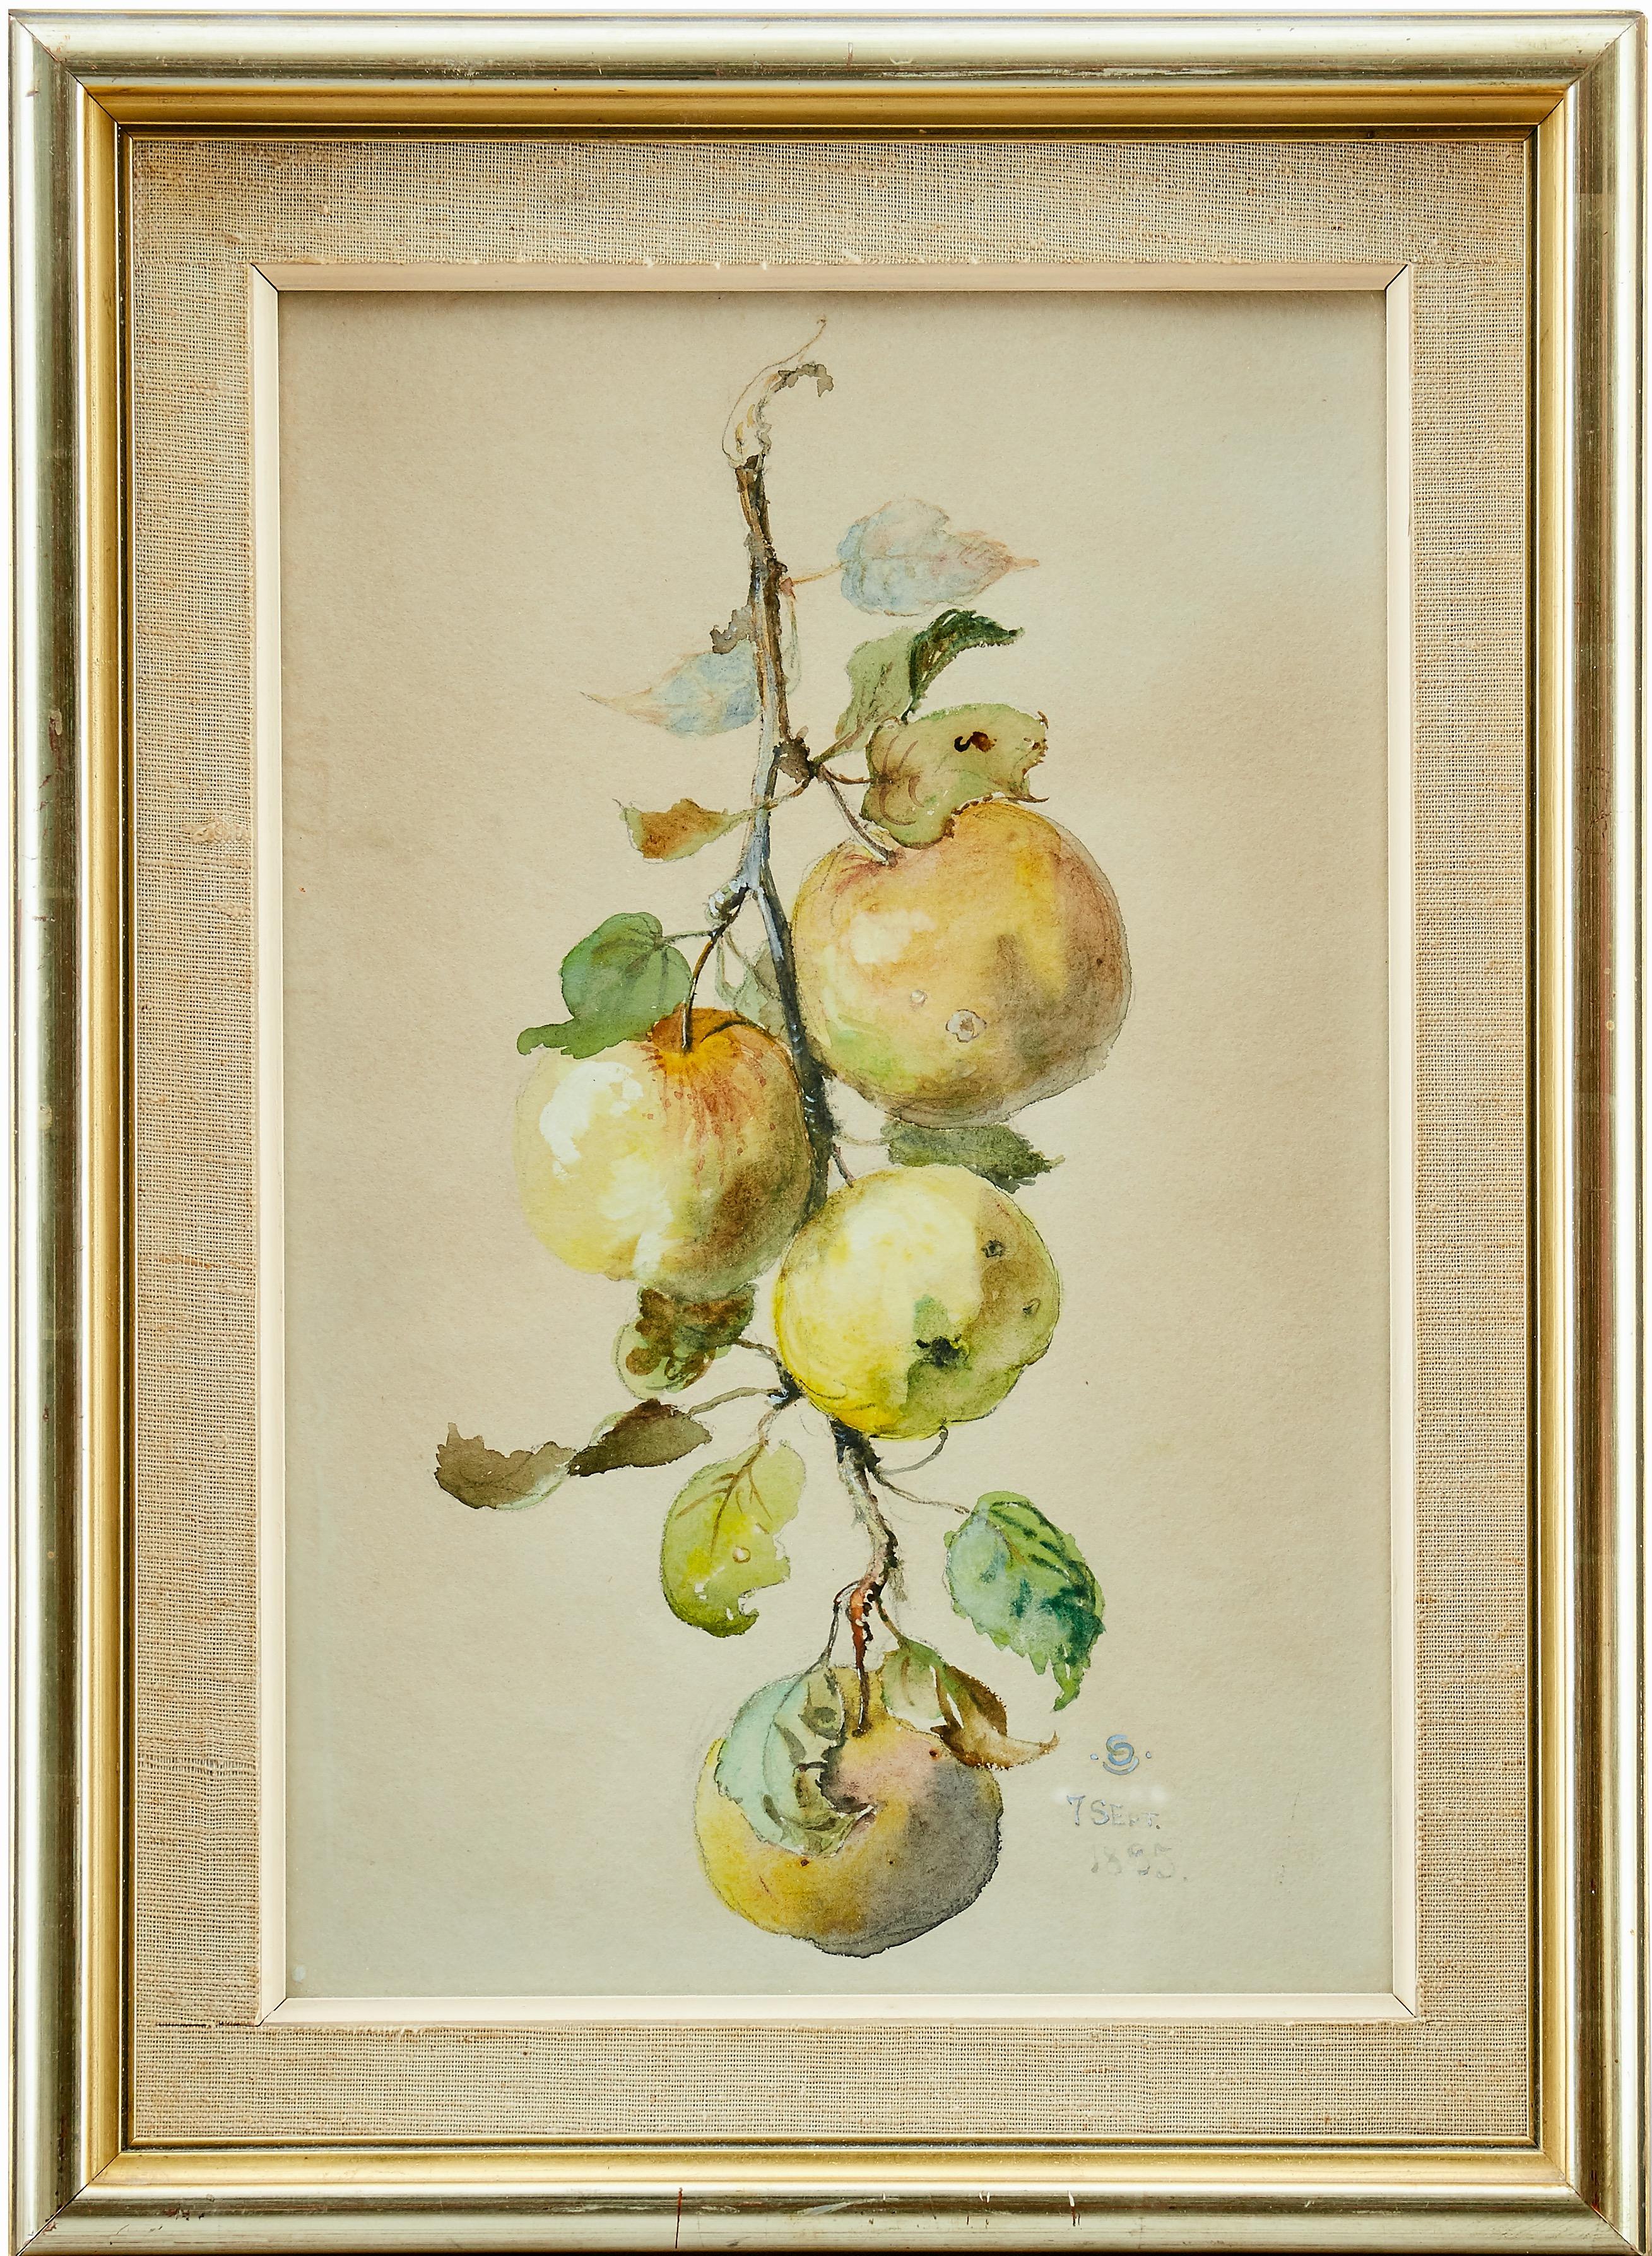 Branche d'arbre avec des pommes, aquarelle, 1895